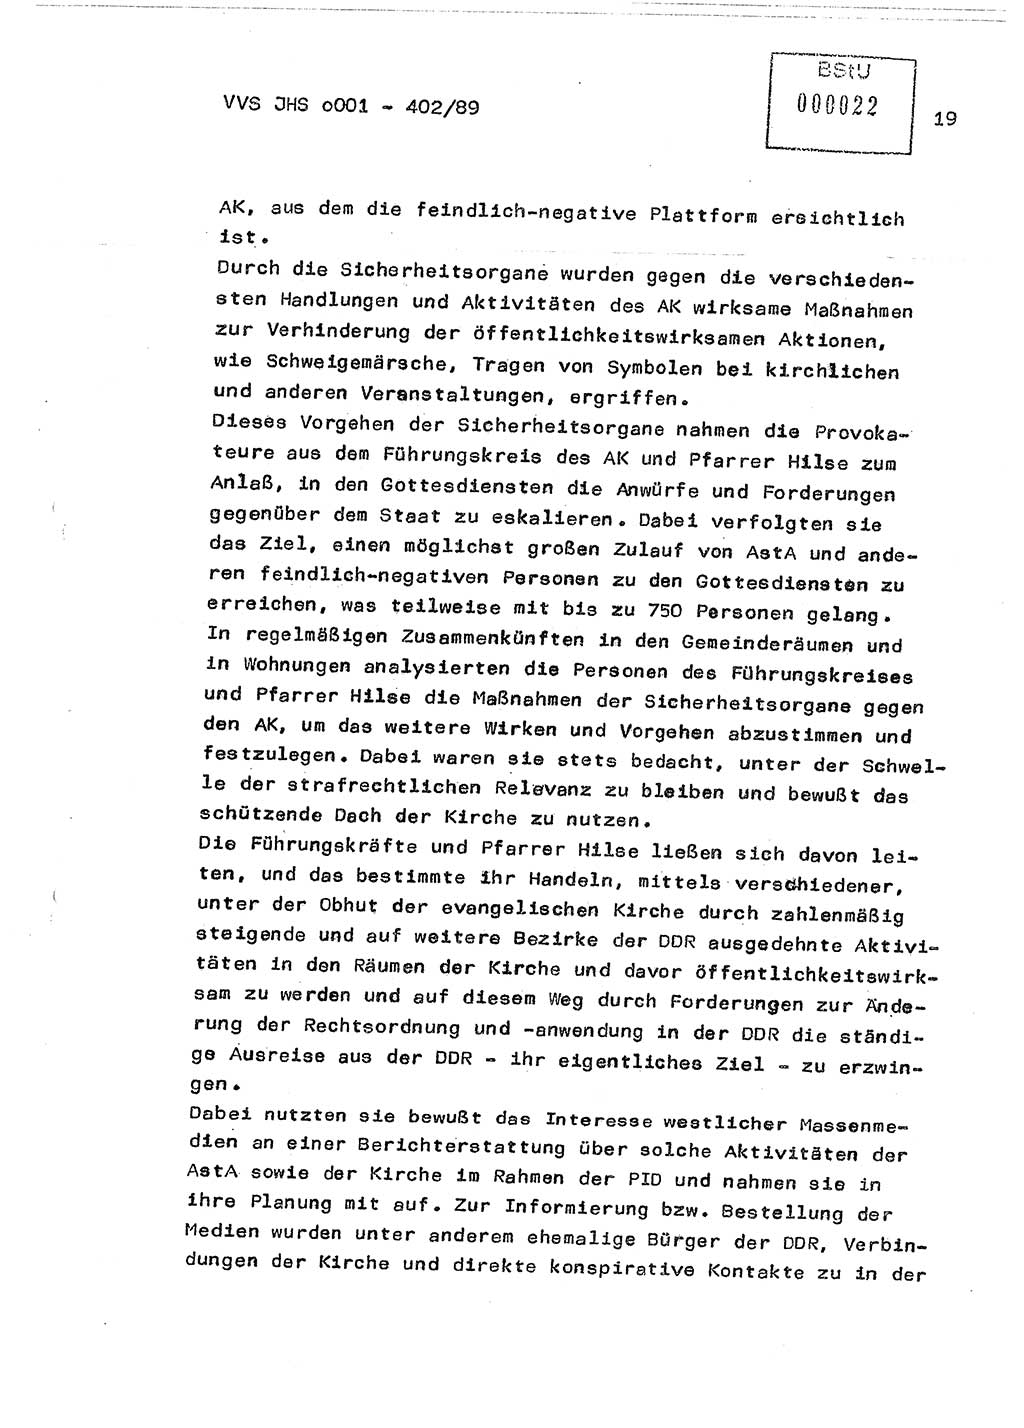 Diplomarbeit Major Günter Müller (HA Ⅸ/9), Ministerium für Staatssicherheit (MfS) [Deutsche Demokratische Republik (DDR)], Juristische Hochschule (JHS), Vertrauliche Verschlußsache (VVS) o001-402/89, Potsdam 1989, Seite 19 (Dipl.-Arb. MfS DDR JHS VVS o001-402/89 1989, S. 19)